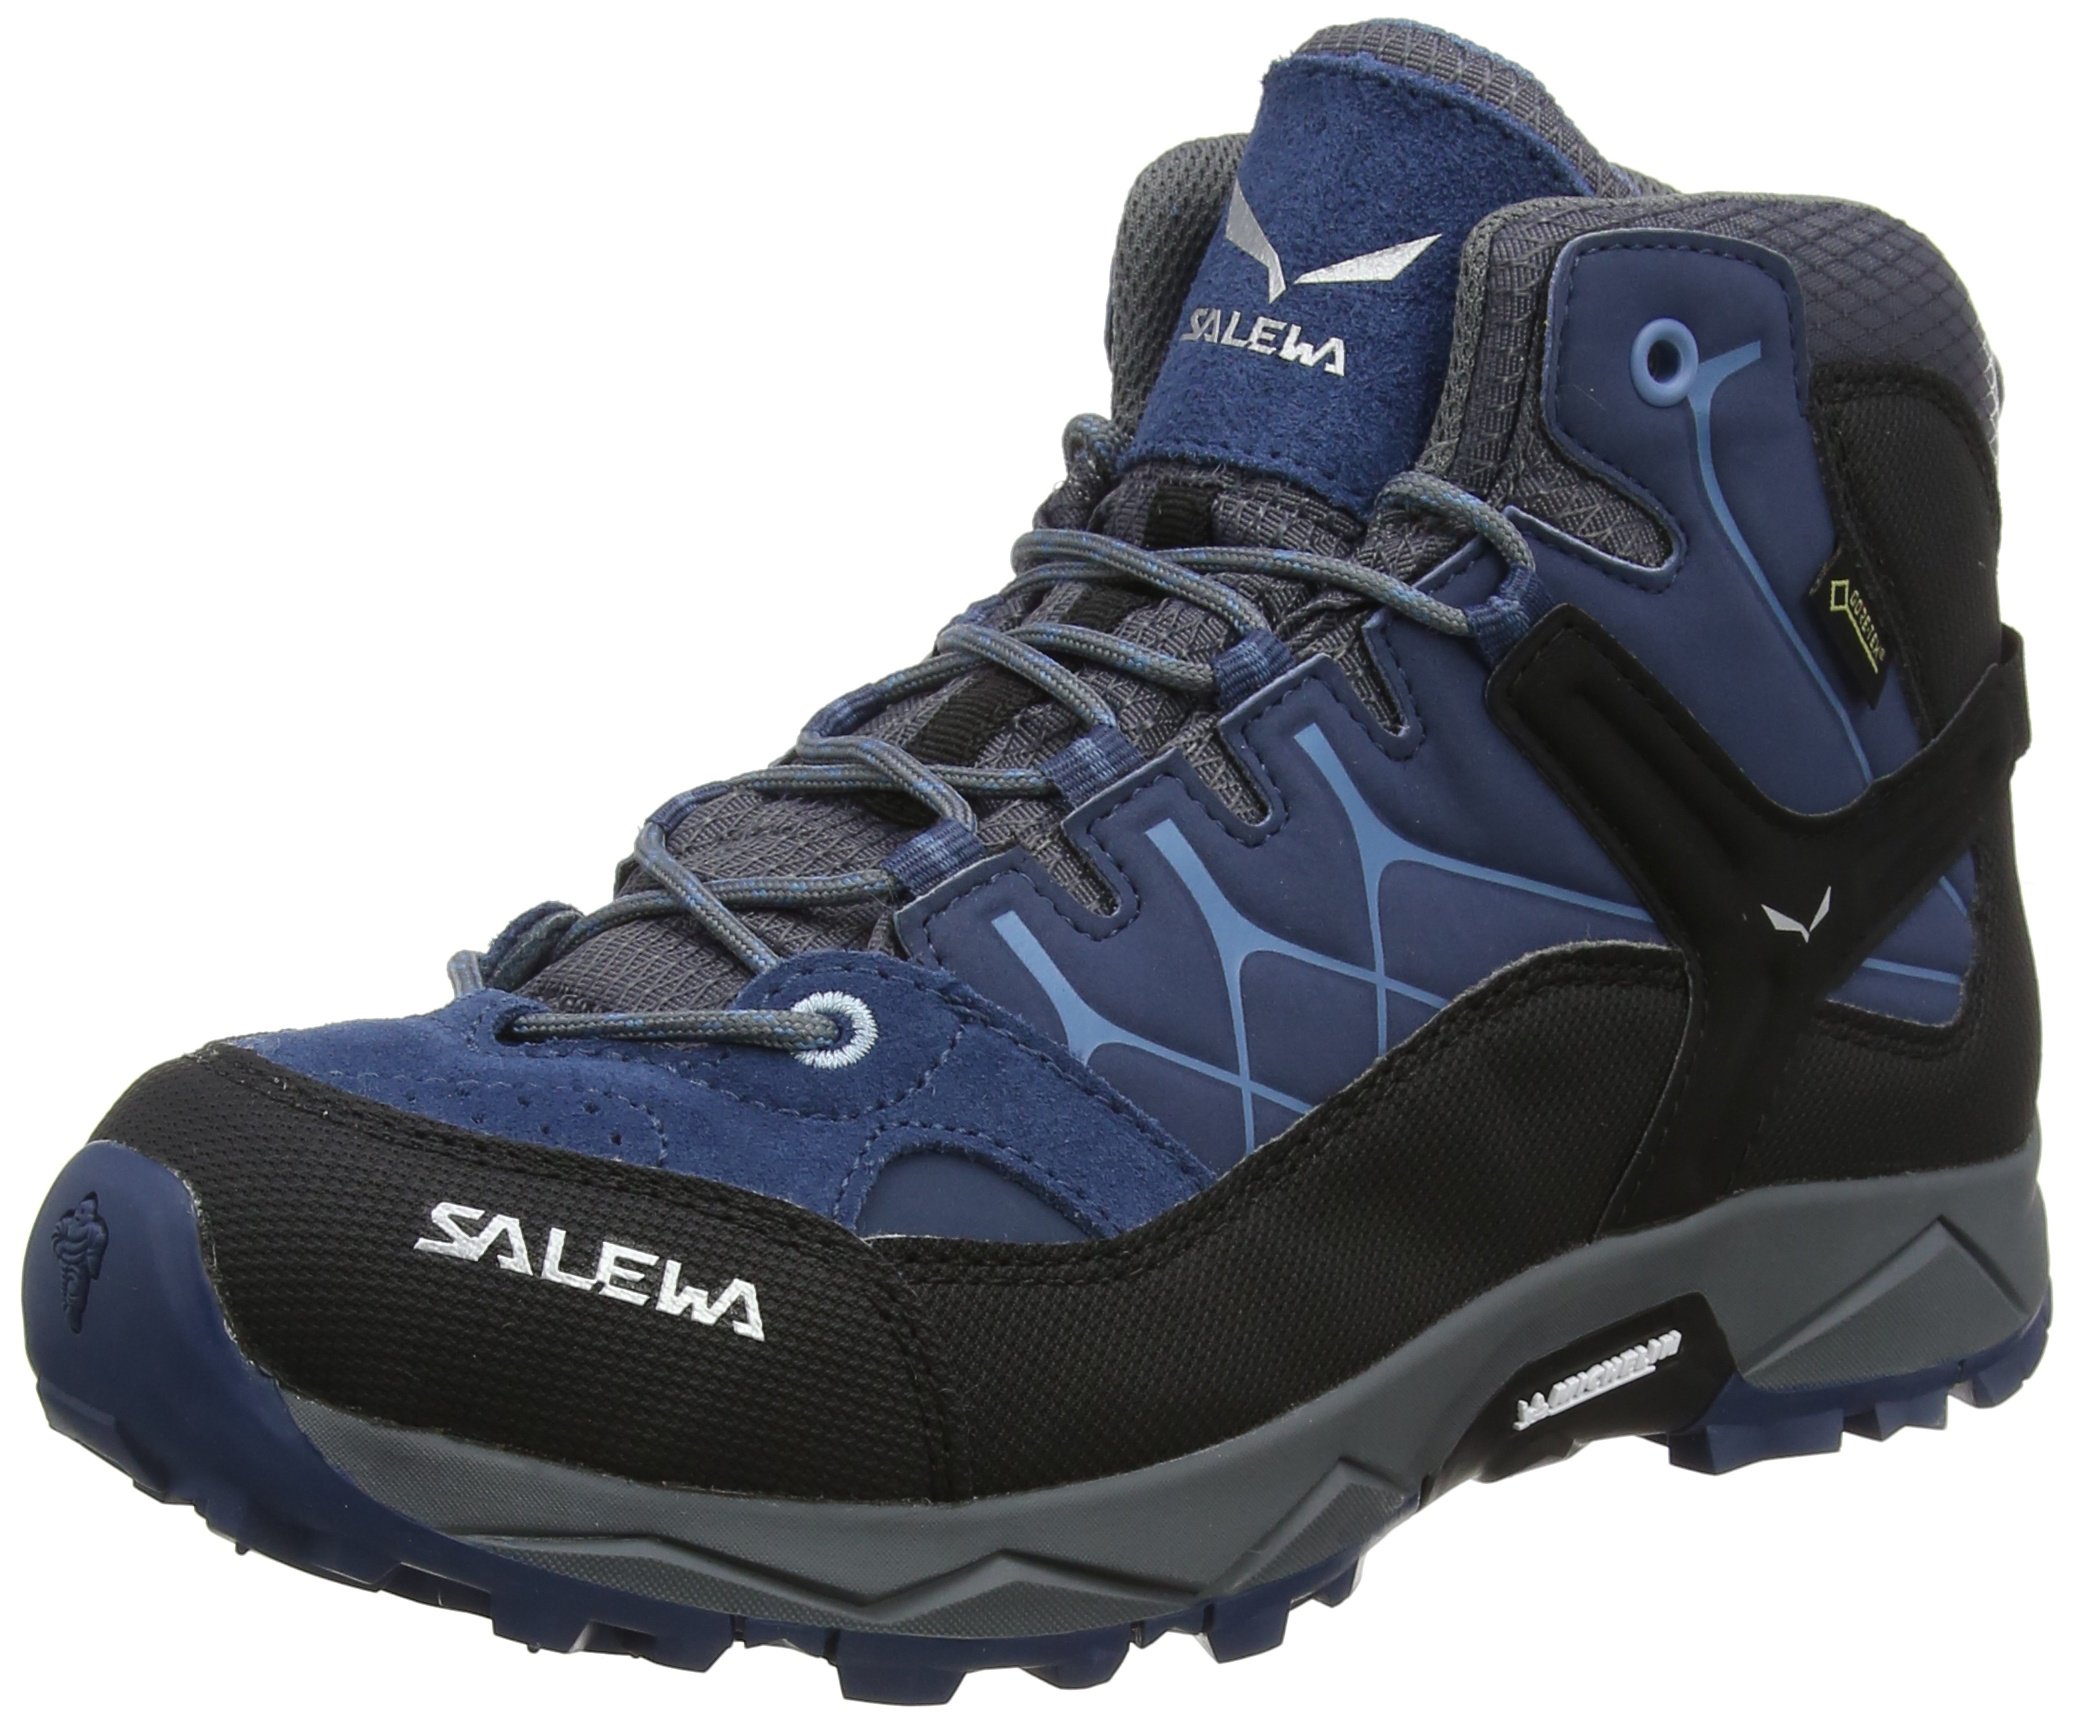 Salewa JR Alp Trainer Mid Gore-TEX, Trekking & hiking boots Unisex Kids, Blue (Dark Denim/Charcoal), 9 UK